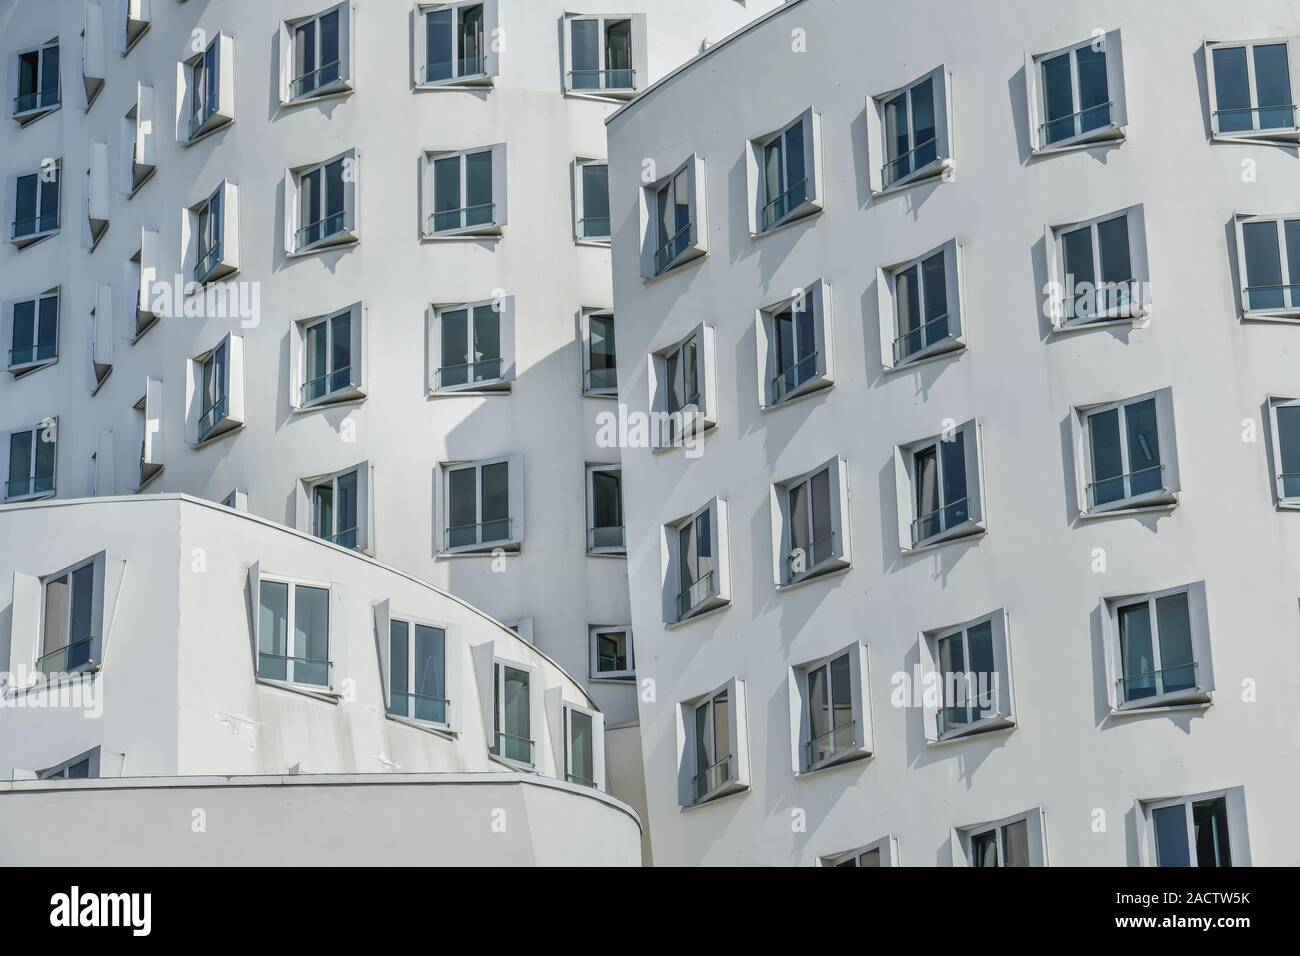 Neuer Zollhof, Gebäude des Architekten Gehry, Düsseldorf, Nordrhein-Westfalen, Deutschland Foto Stock